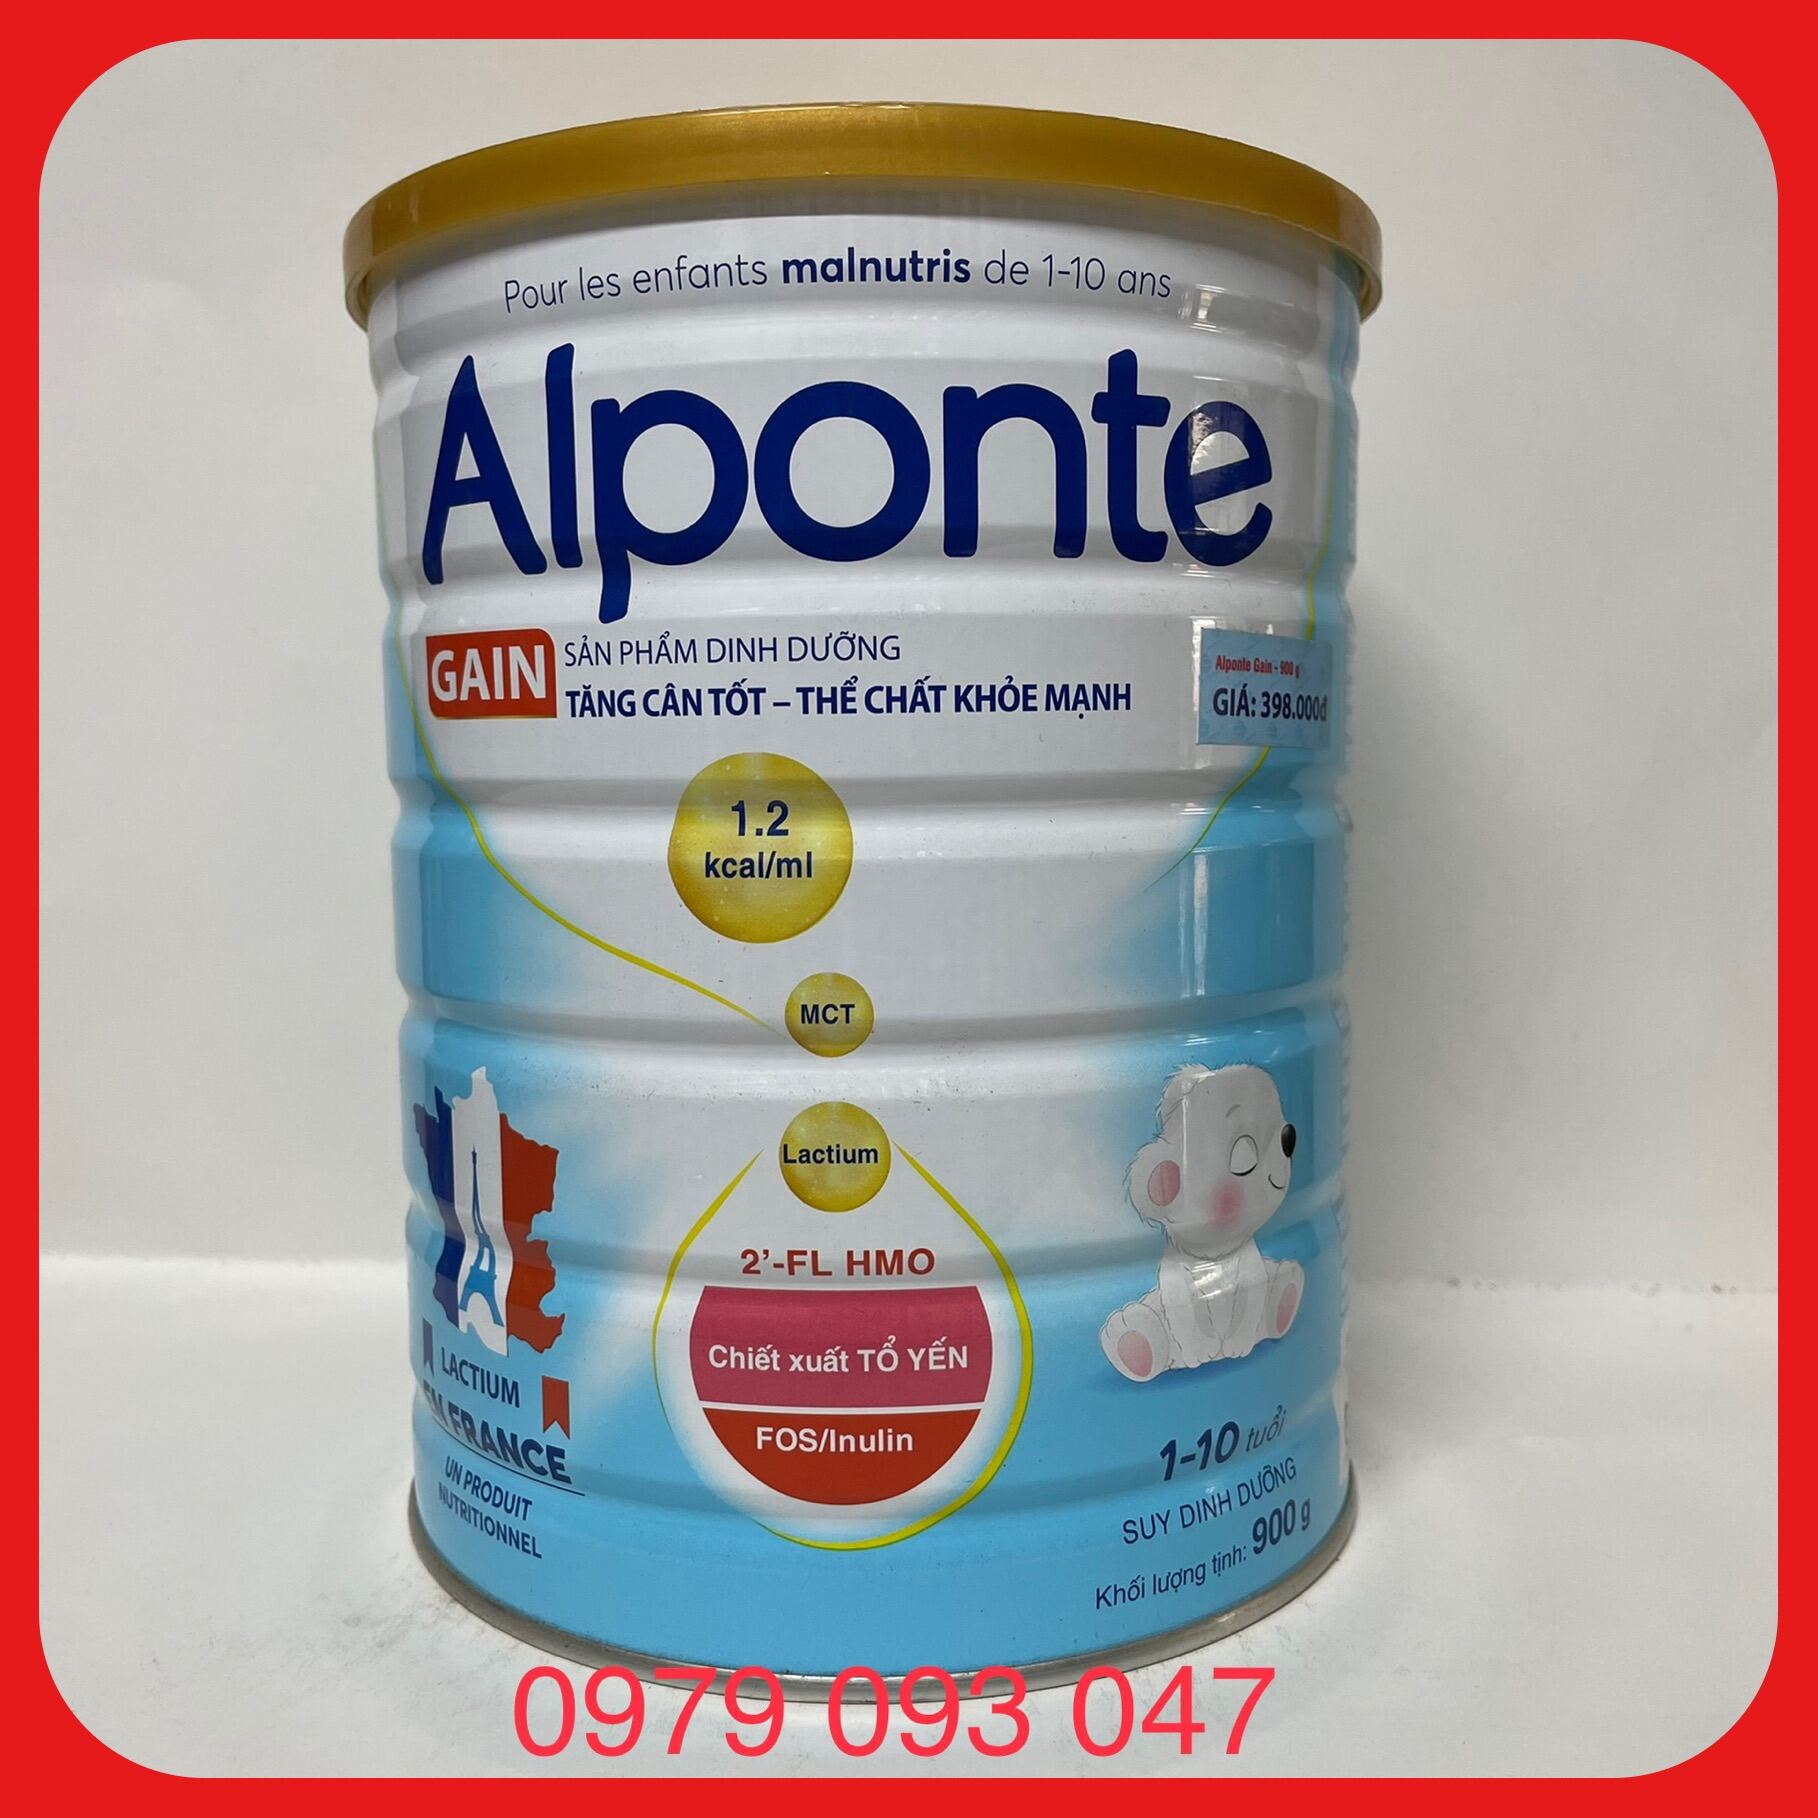 Sữa Bột Alponte Gain  tăng cân tốt-thể chất khoẻ mạnh  lon 900g date mơi